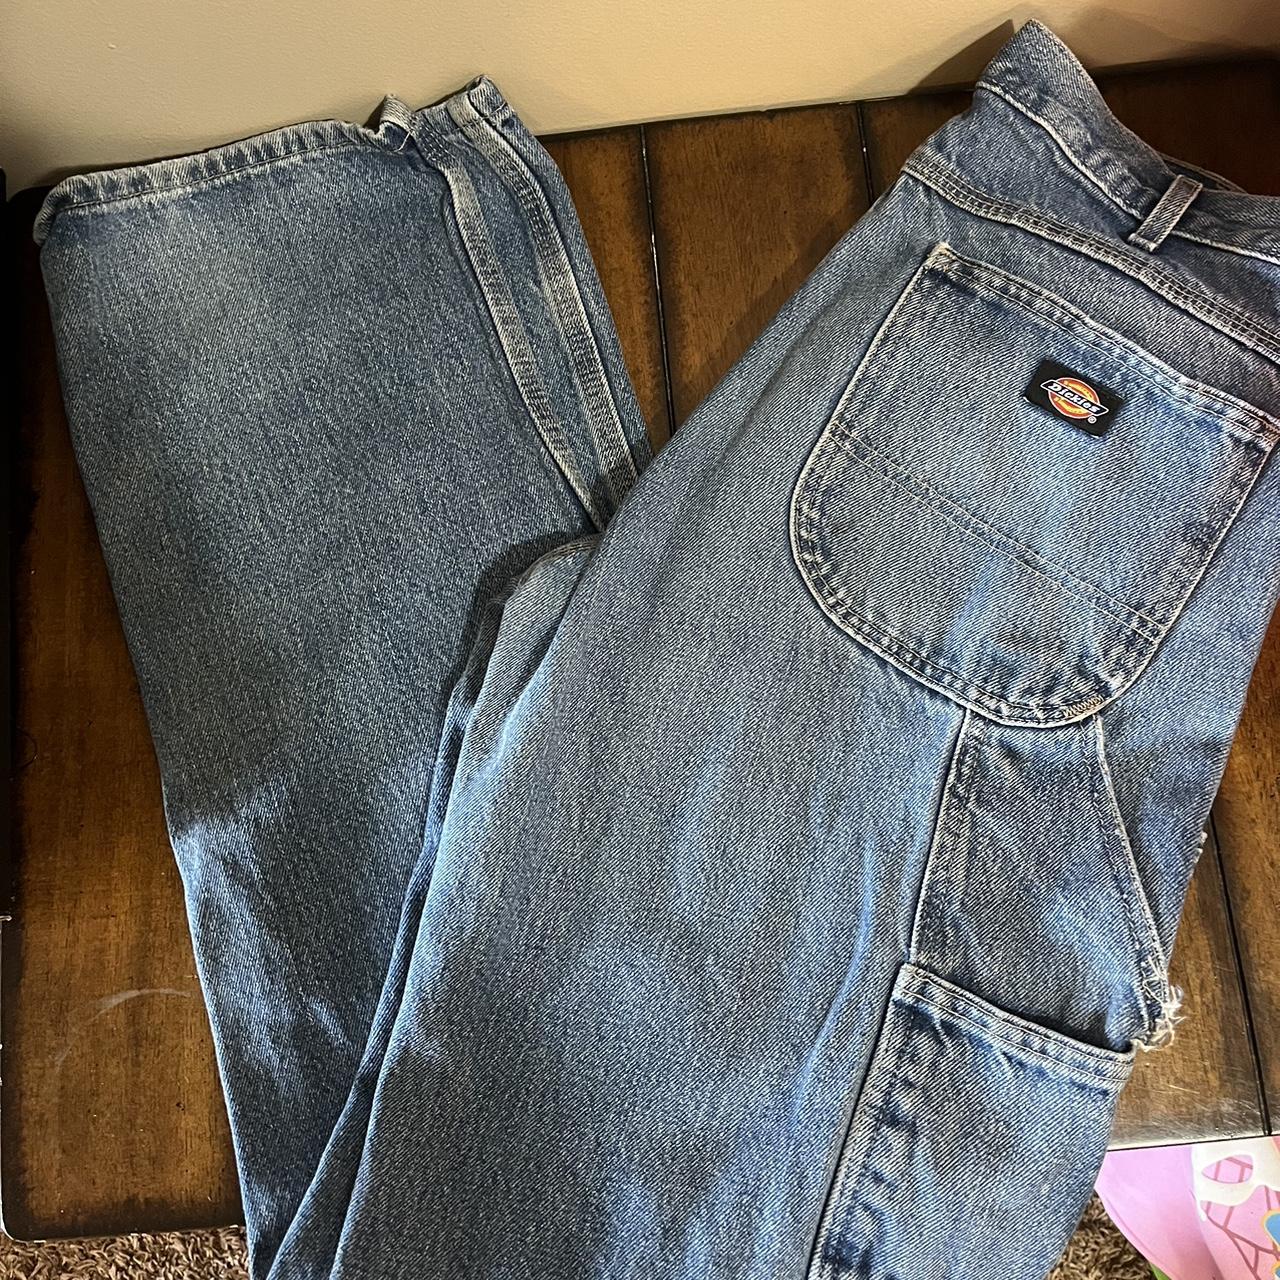 Men’s dickies jeans - Depop